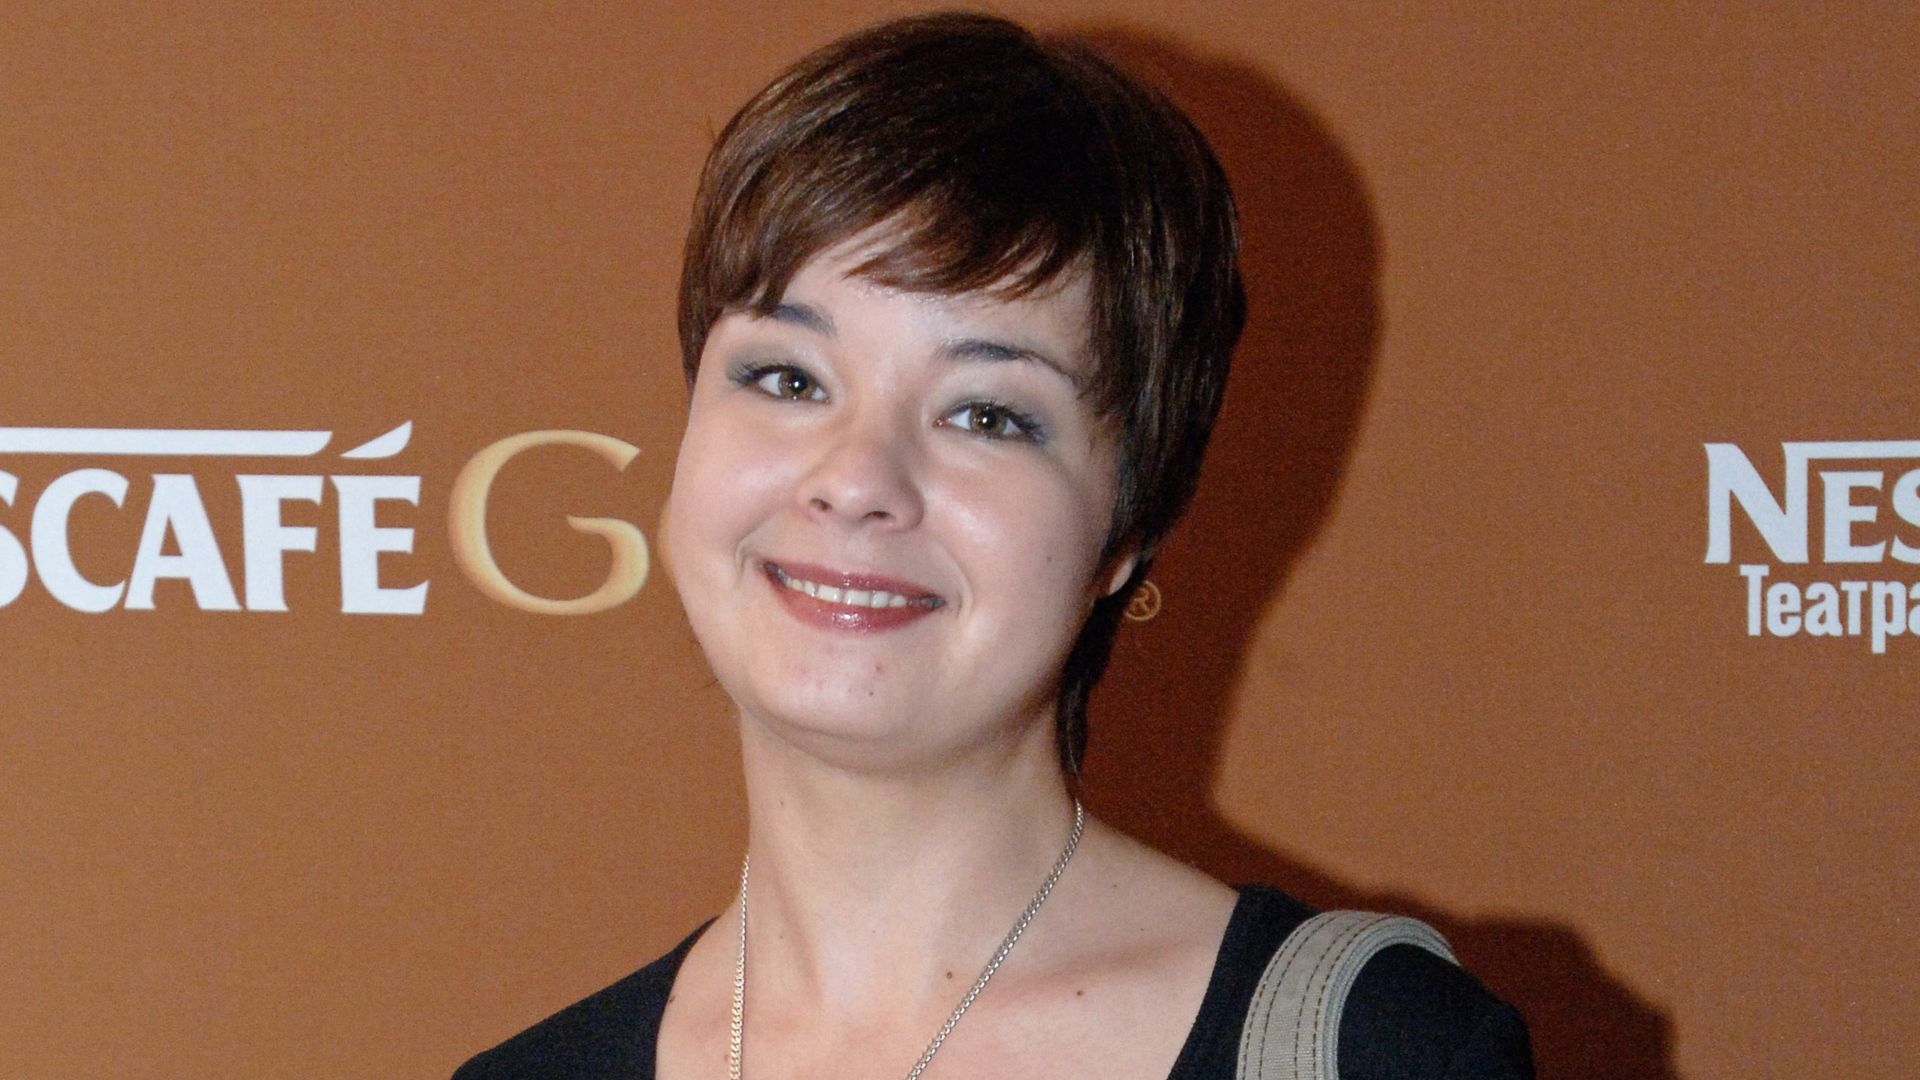 Юлия захарова актриса сейчас биография фото